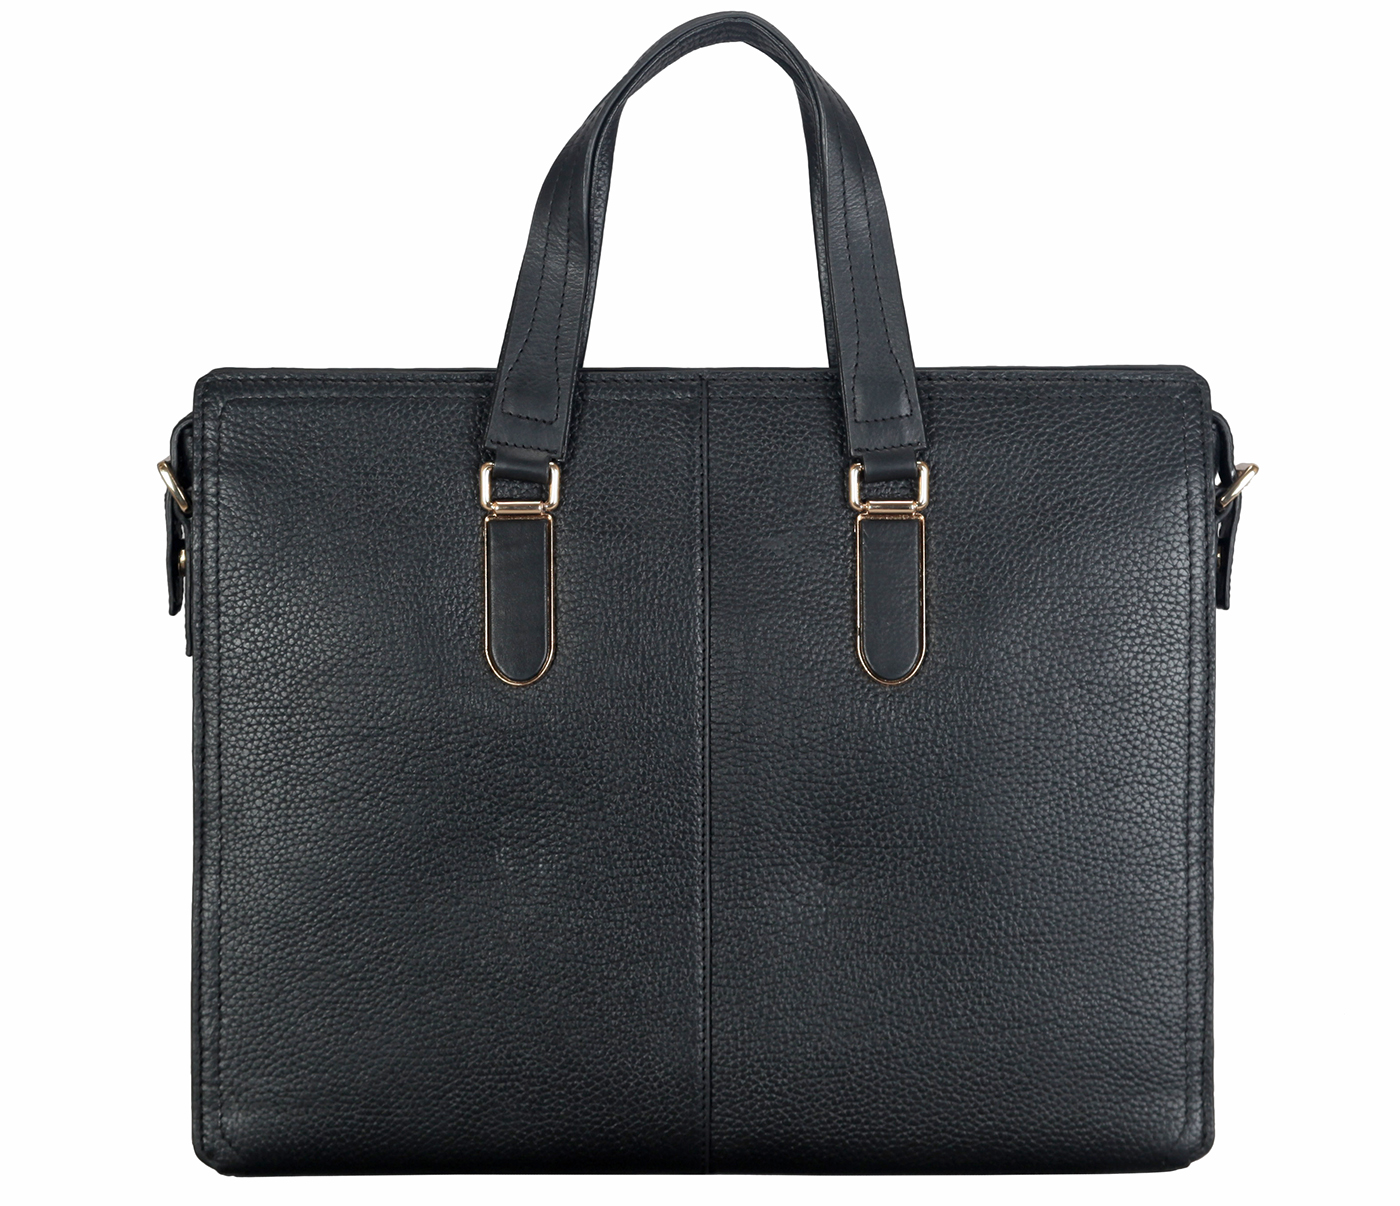 Portfolio / Laptop Bag-Julian-Laptop cum portfolio slim bag in Genuine Leather - Black